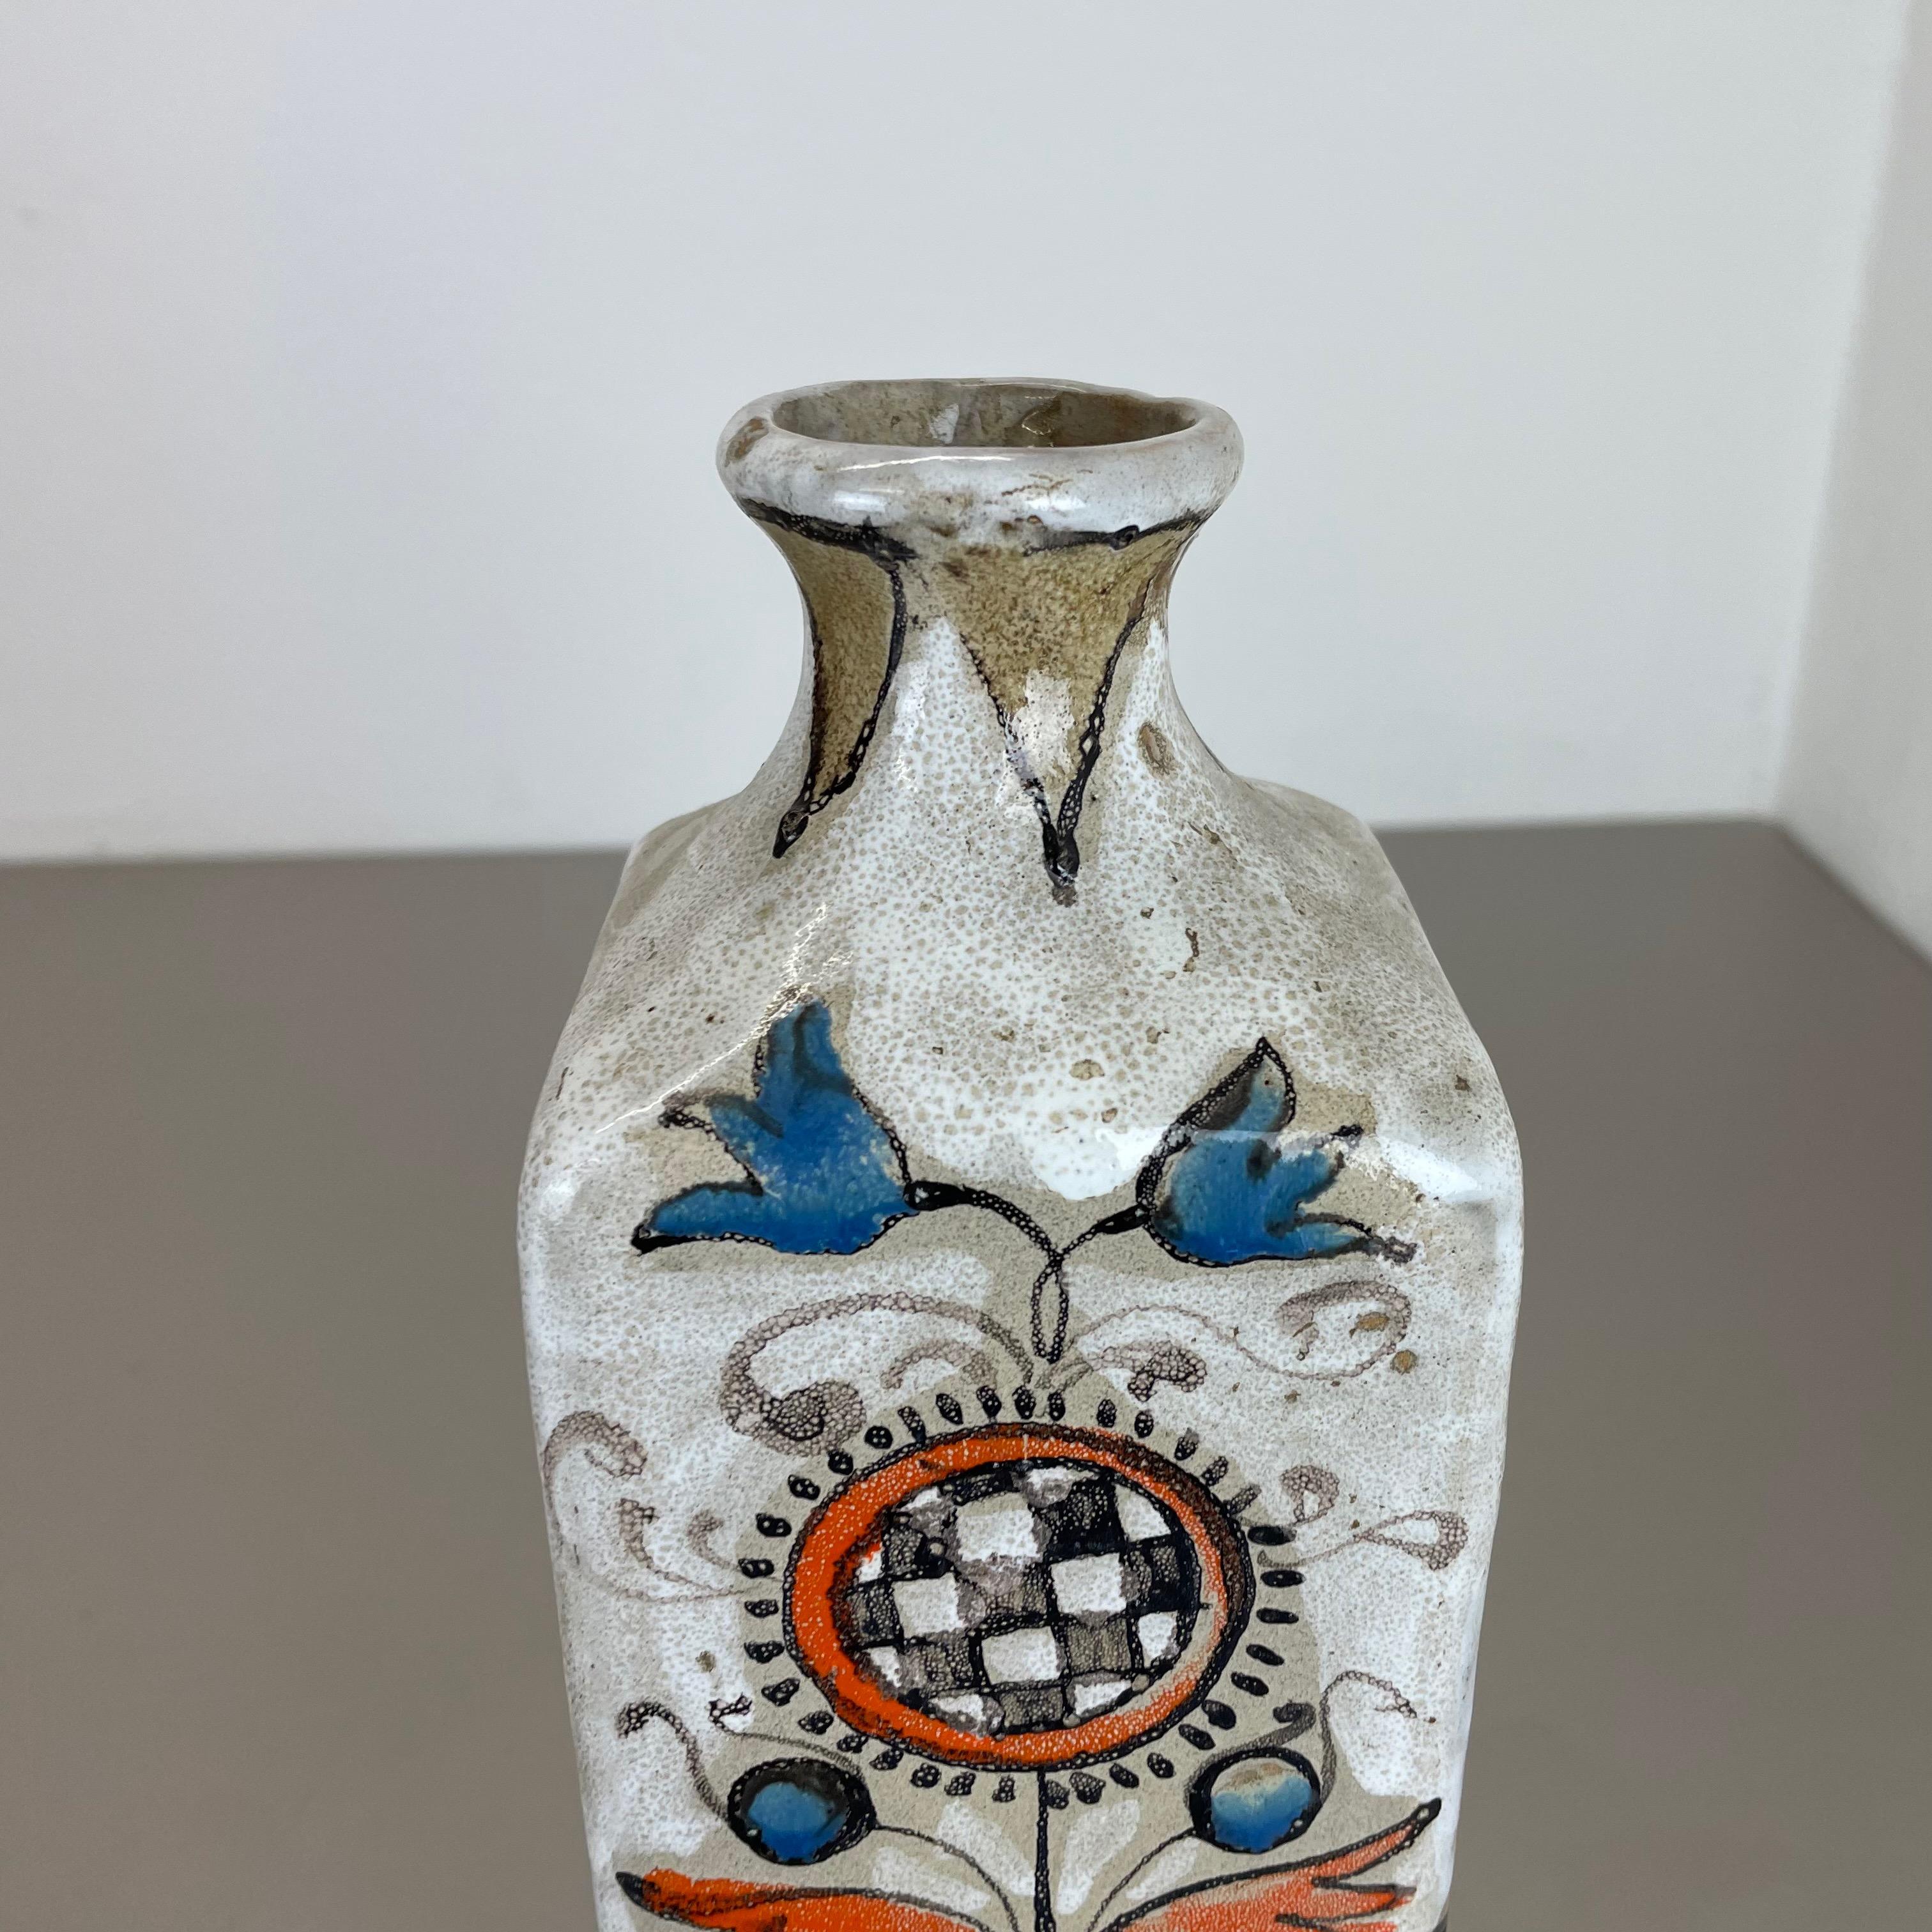 German Unique Ceramic Studio Pottery Vase by Elio Schiavon Ceramics, Padua, Italy 1970s For Sale